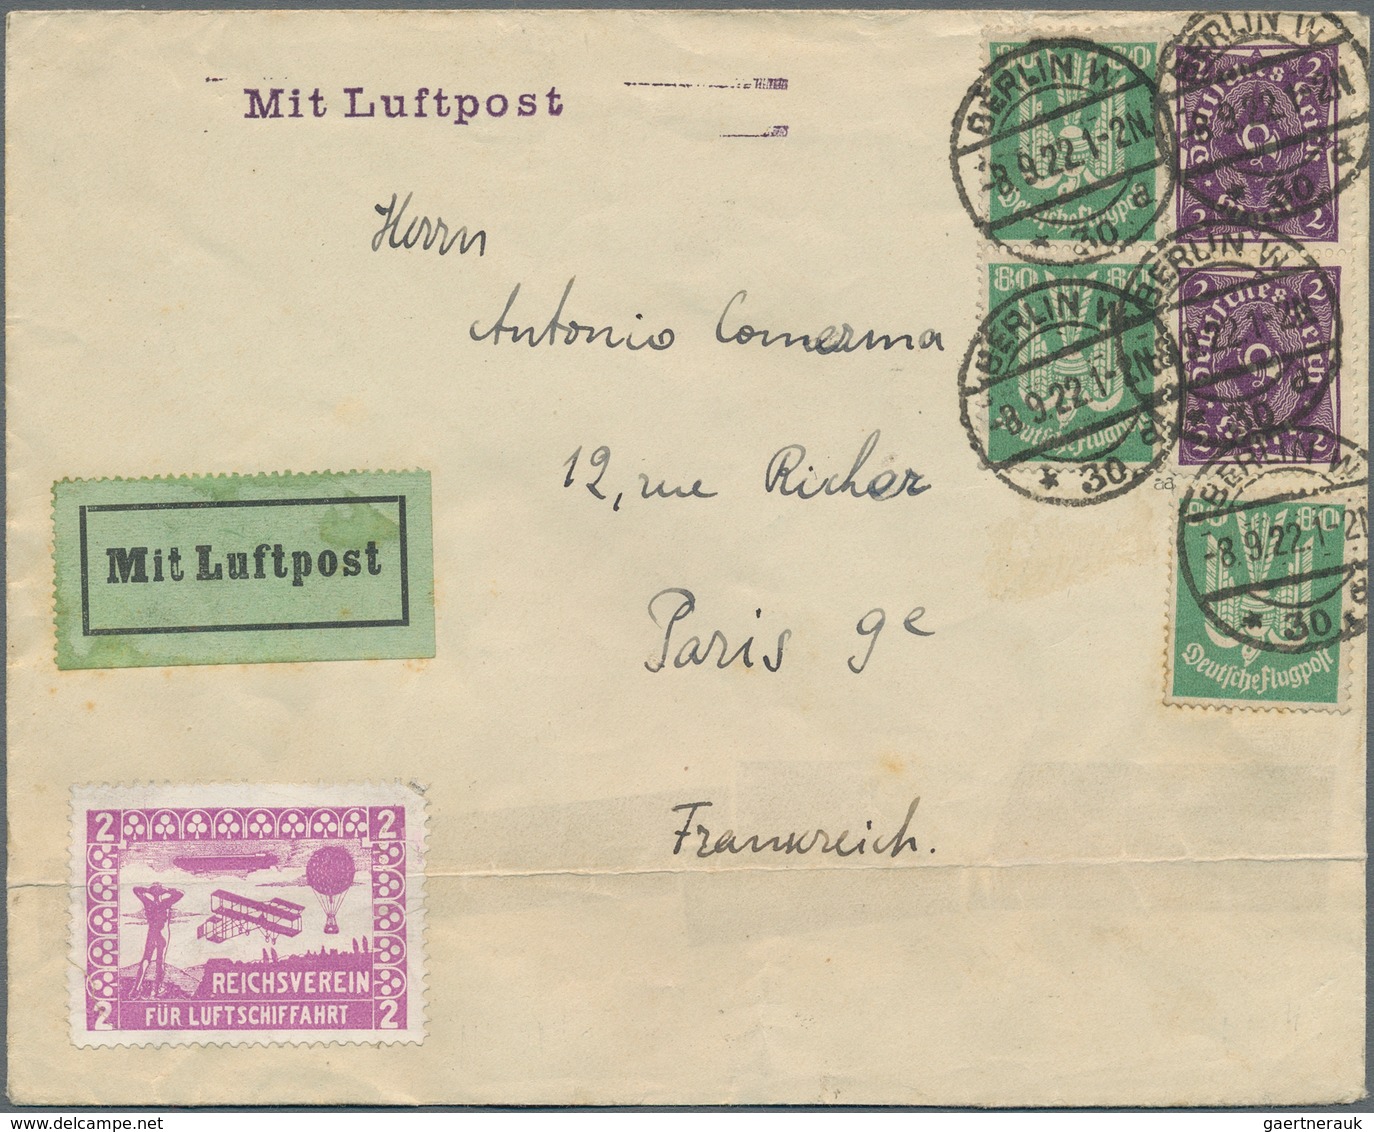 Flugpost Deutschland: 1919/1923, FLUGPOST der INFLATIONS-ZEIT, gehaltvolles Konvolut mit 24 Luftpost